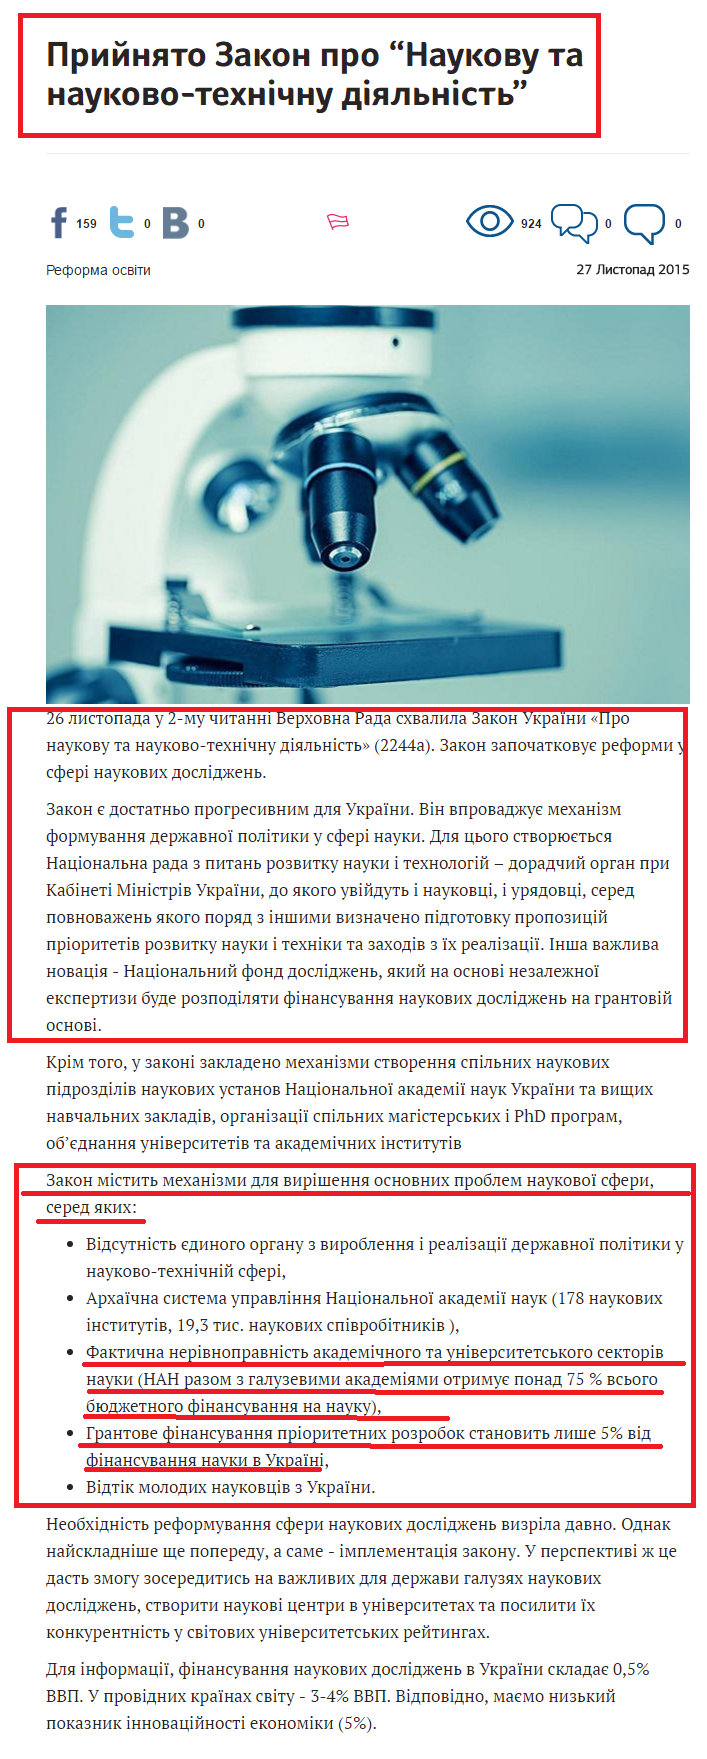 http://reforms.in.ua/ua/news/pryynyato-zakon-pro-naukovu-ta-naukovo-tehnichnu-diyalnist